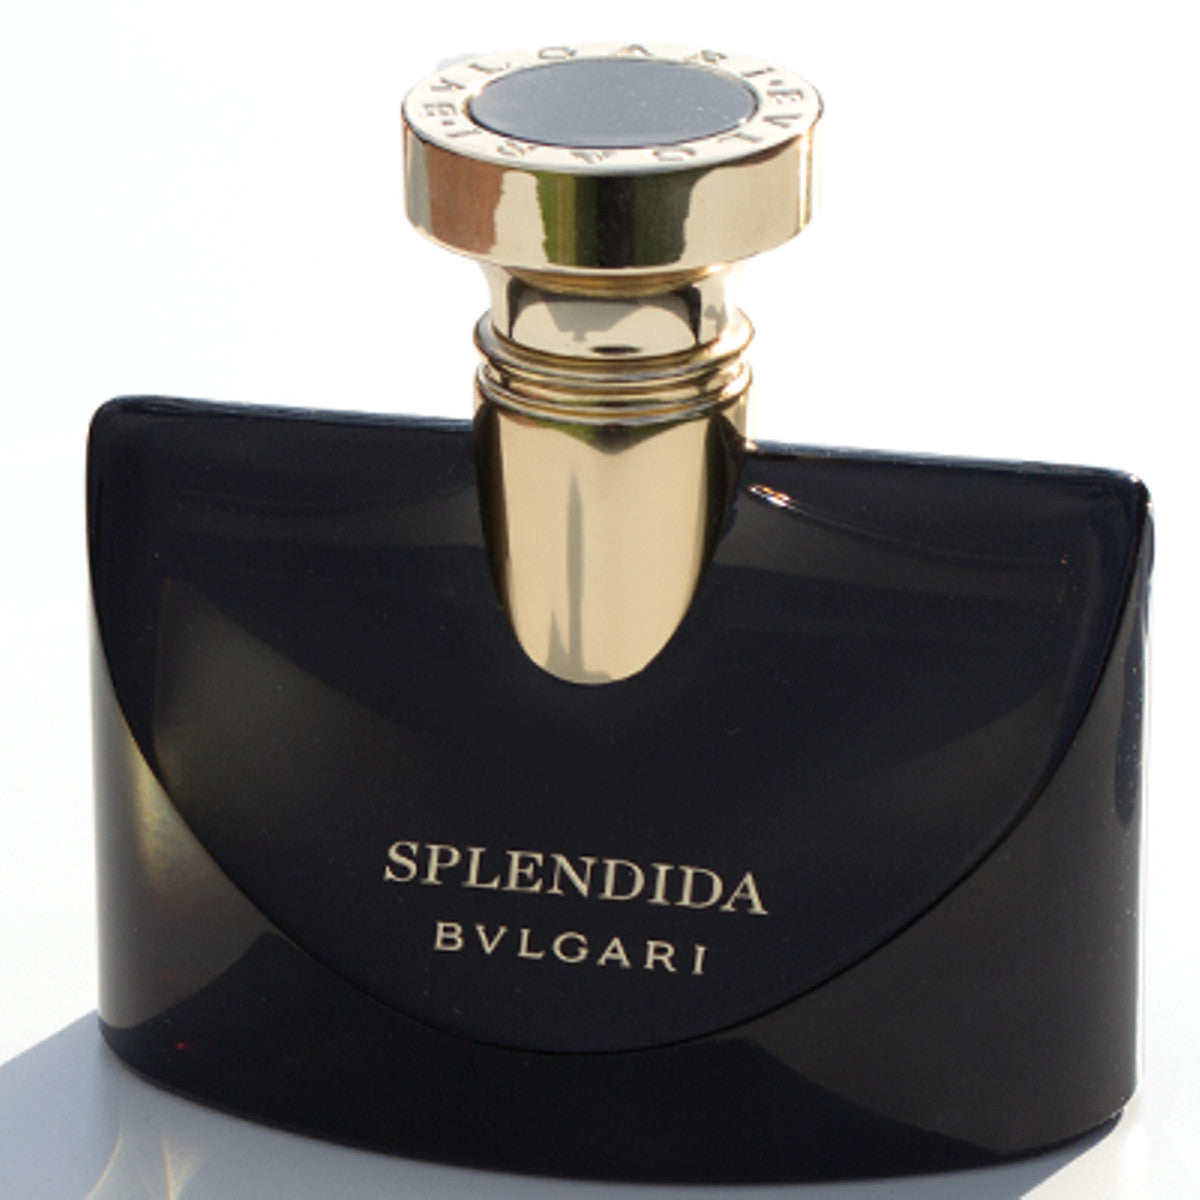 bvlgari splendida parfum